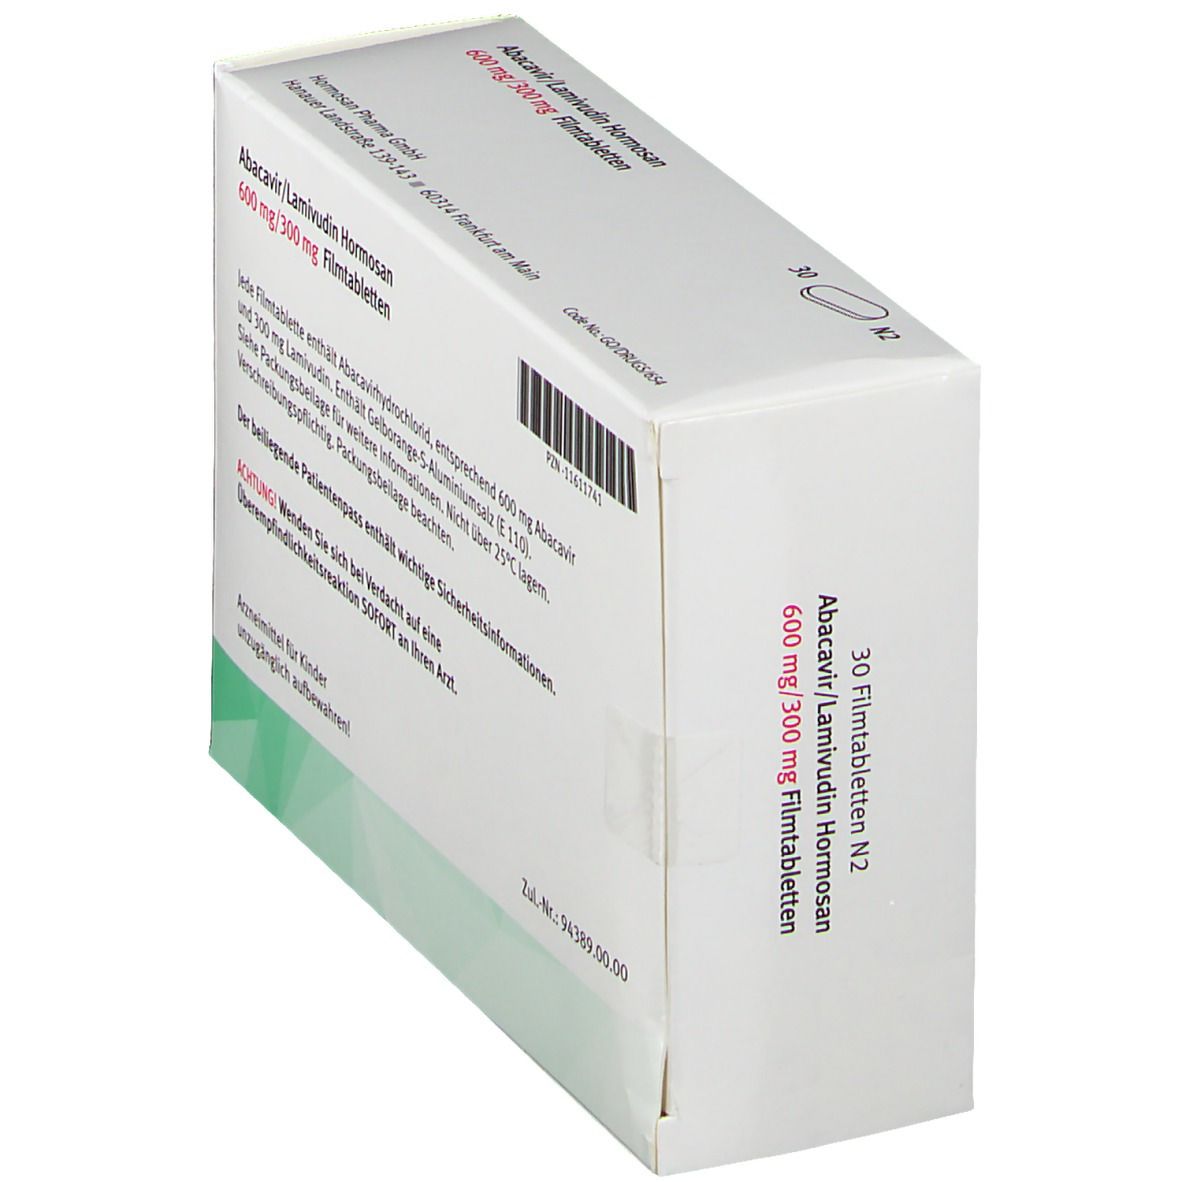 Abacavir/Lamivudin Hormosan 600 mg/300 mg